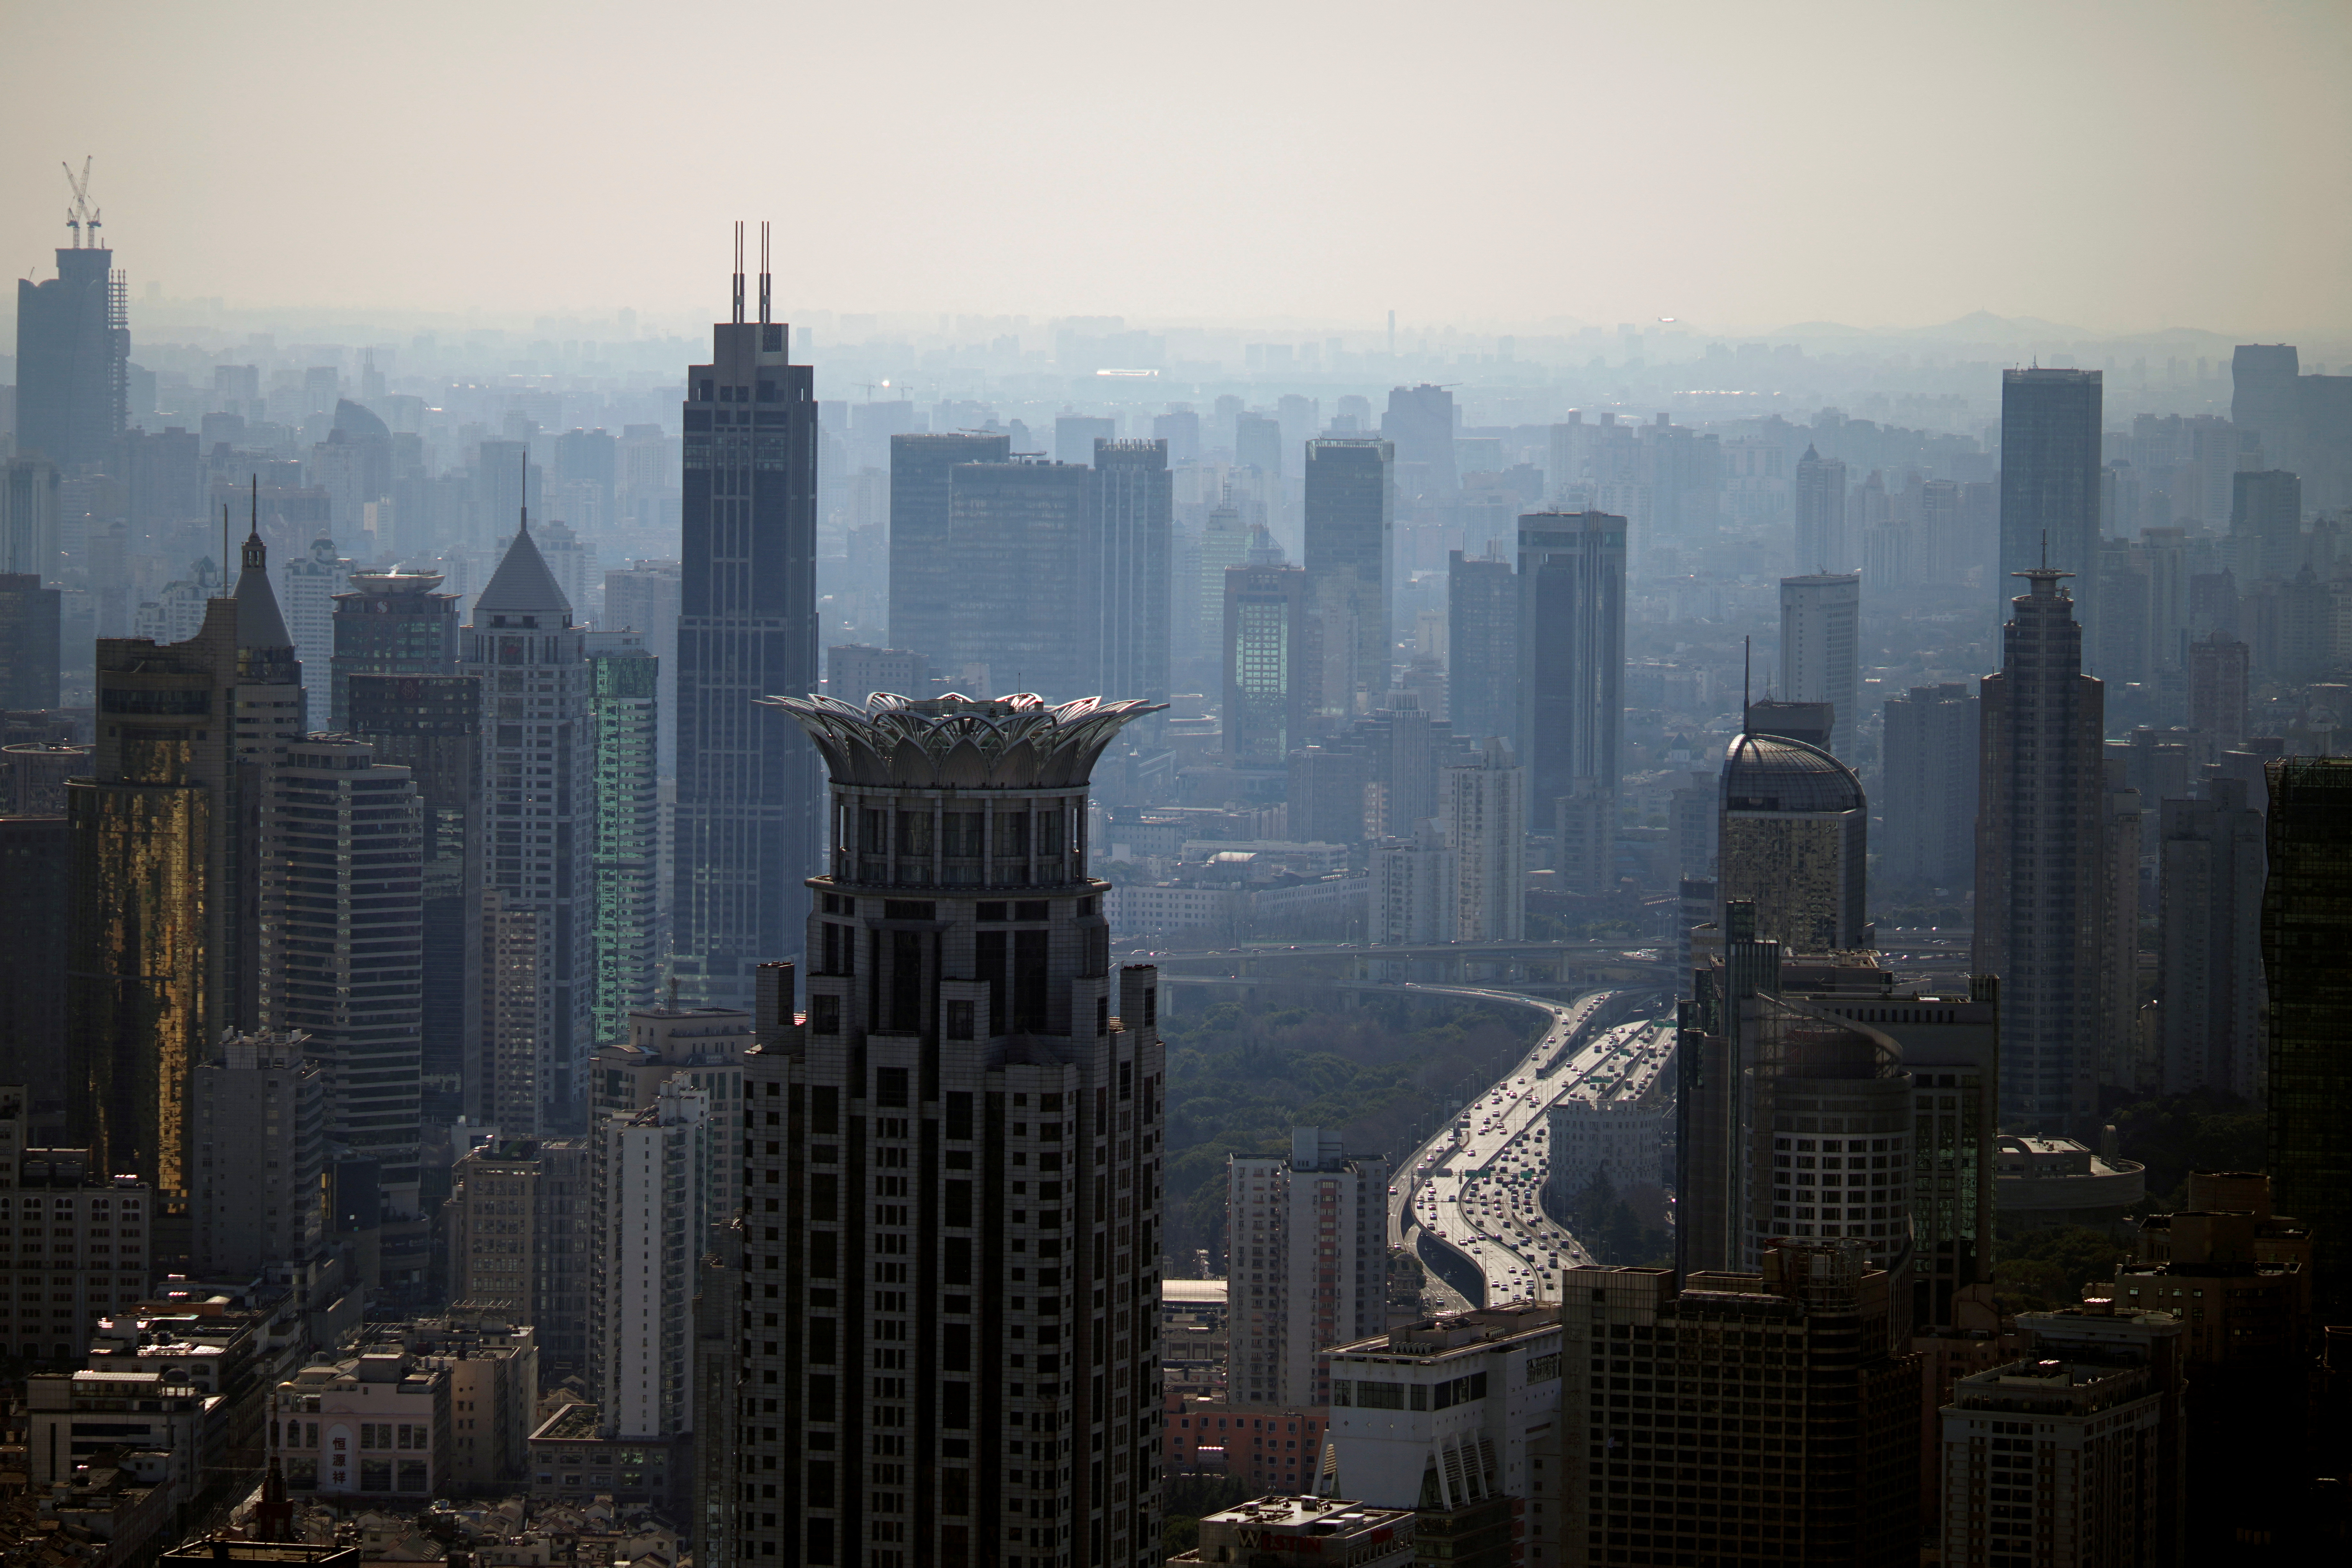 Quang cảnh đường chân trời của thành phố ở Thượng Hải